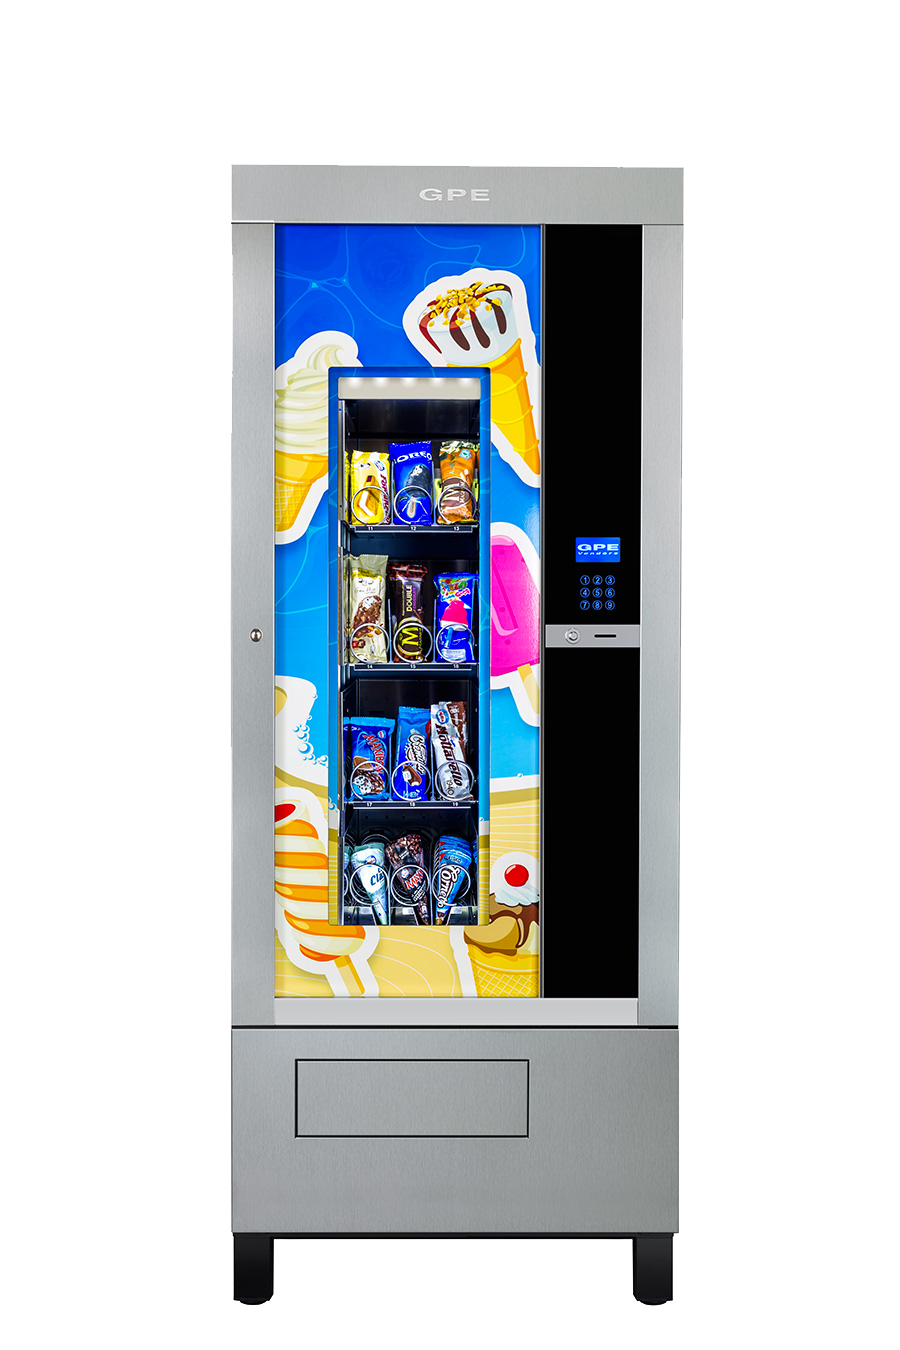 Gpe Frozen refrigeratore per la vendita di gelati o surgelati versione anche blindato